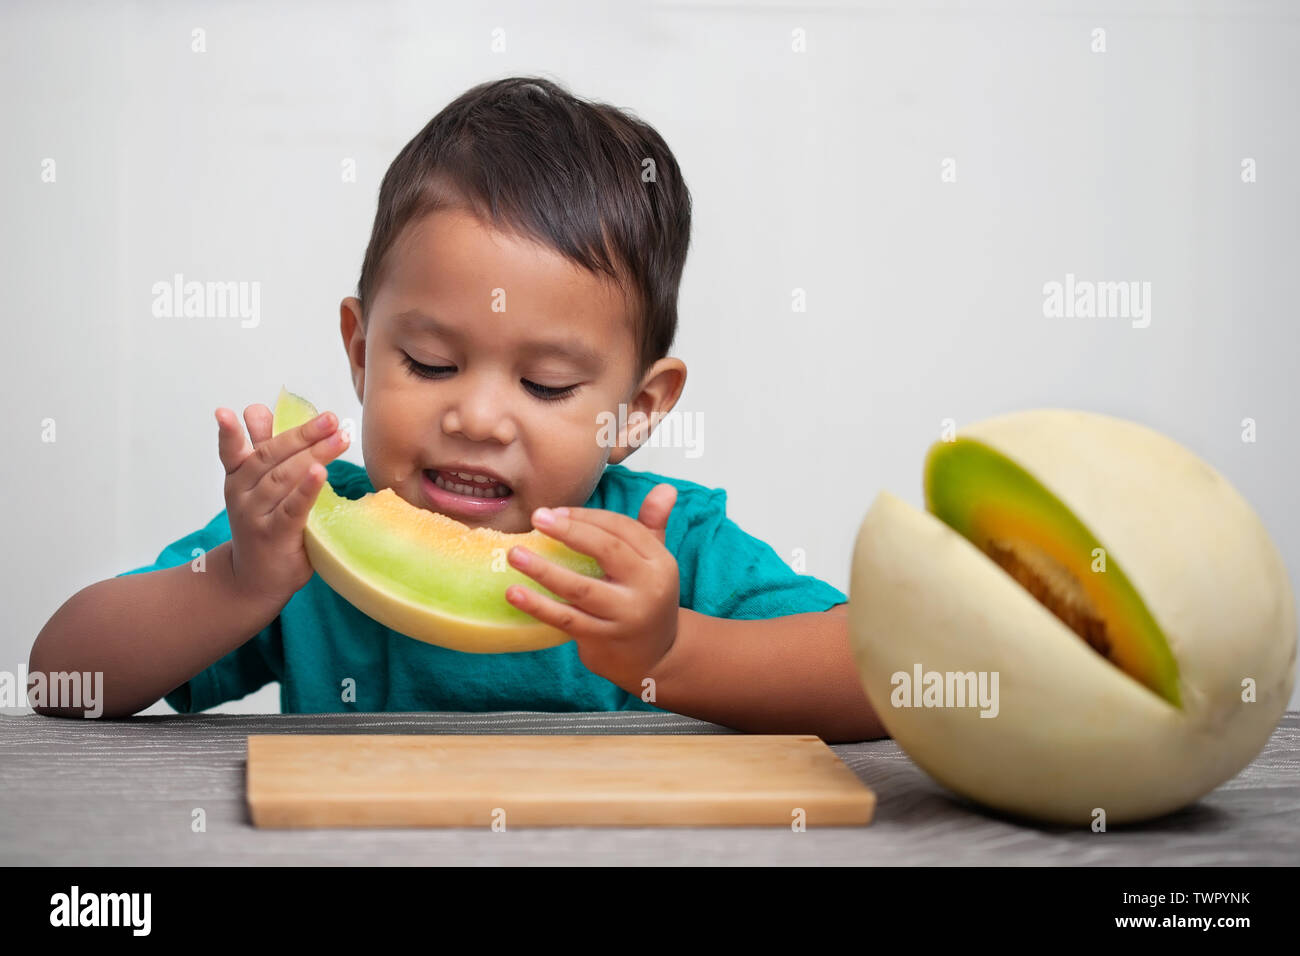 Un petit garçon tenant une tranche de melon frais fruit à sa bouche qu'il a pris une bouchée, et d'apprécier le goût sucré et juteux. Banque D'Images